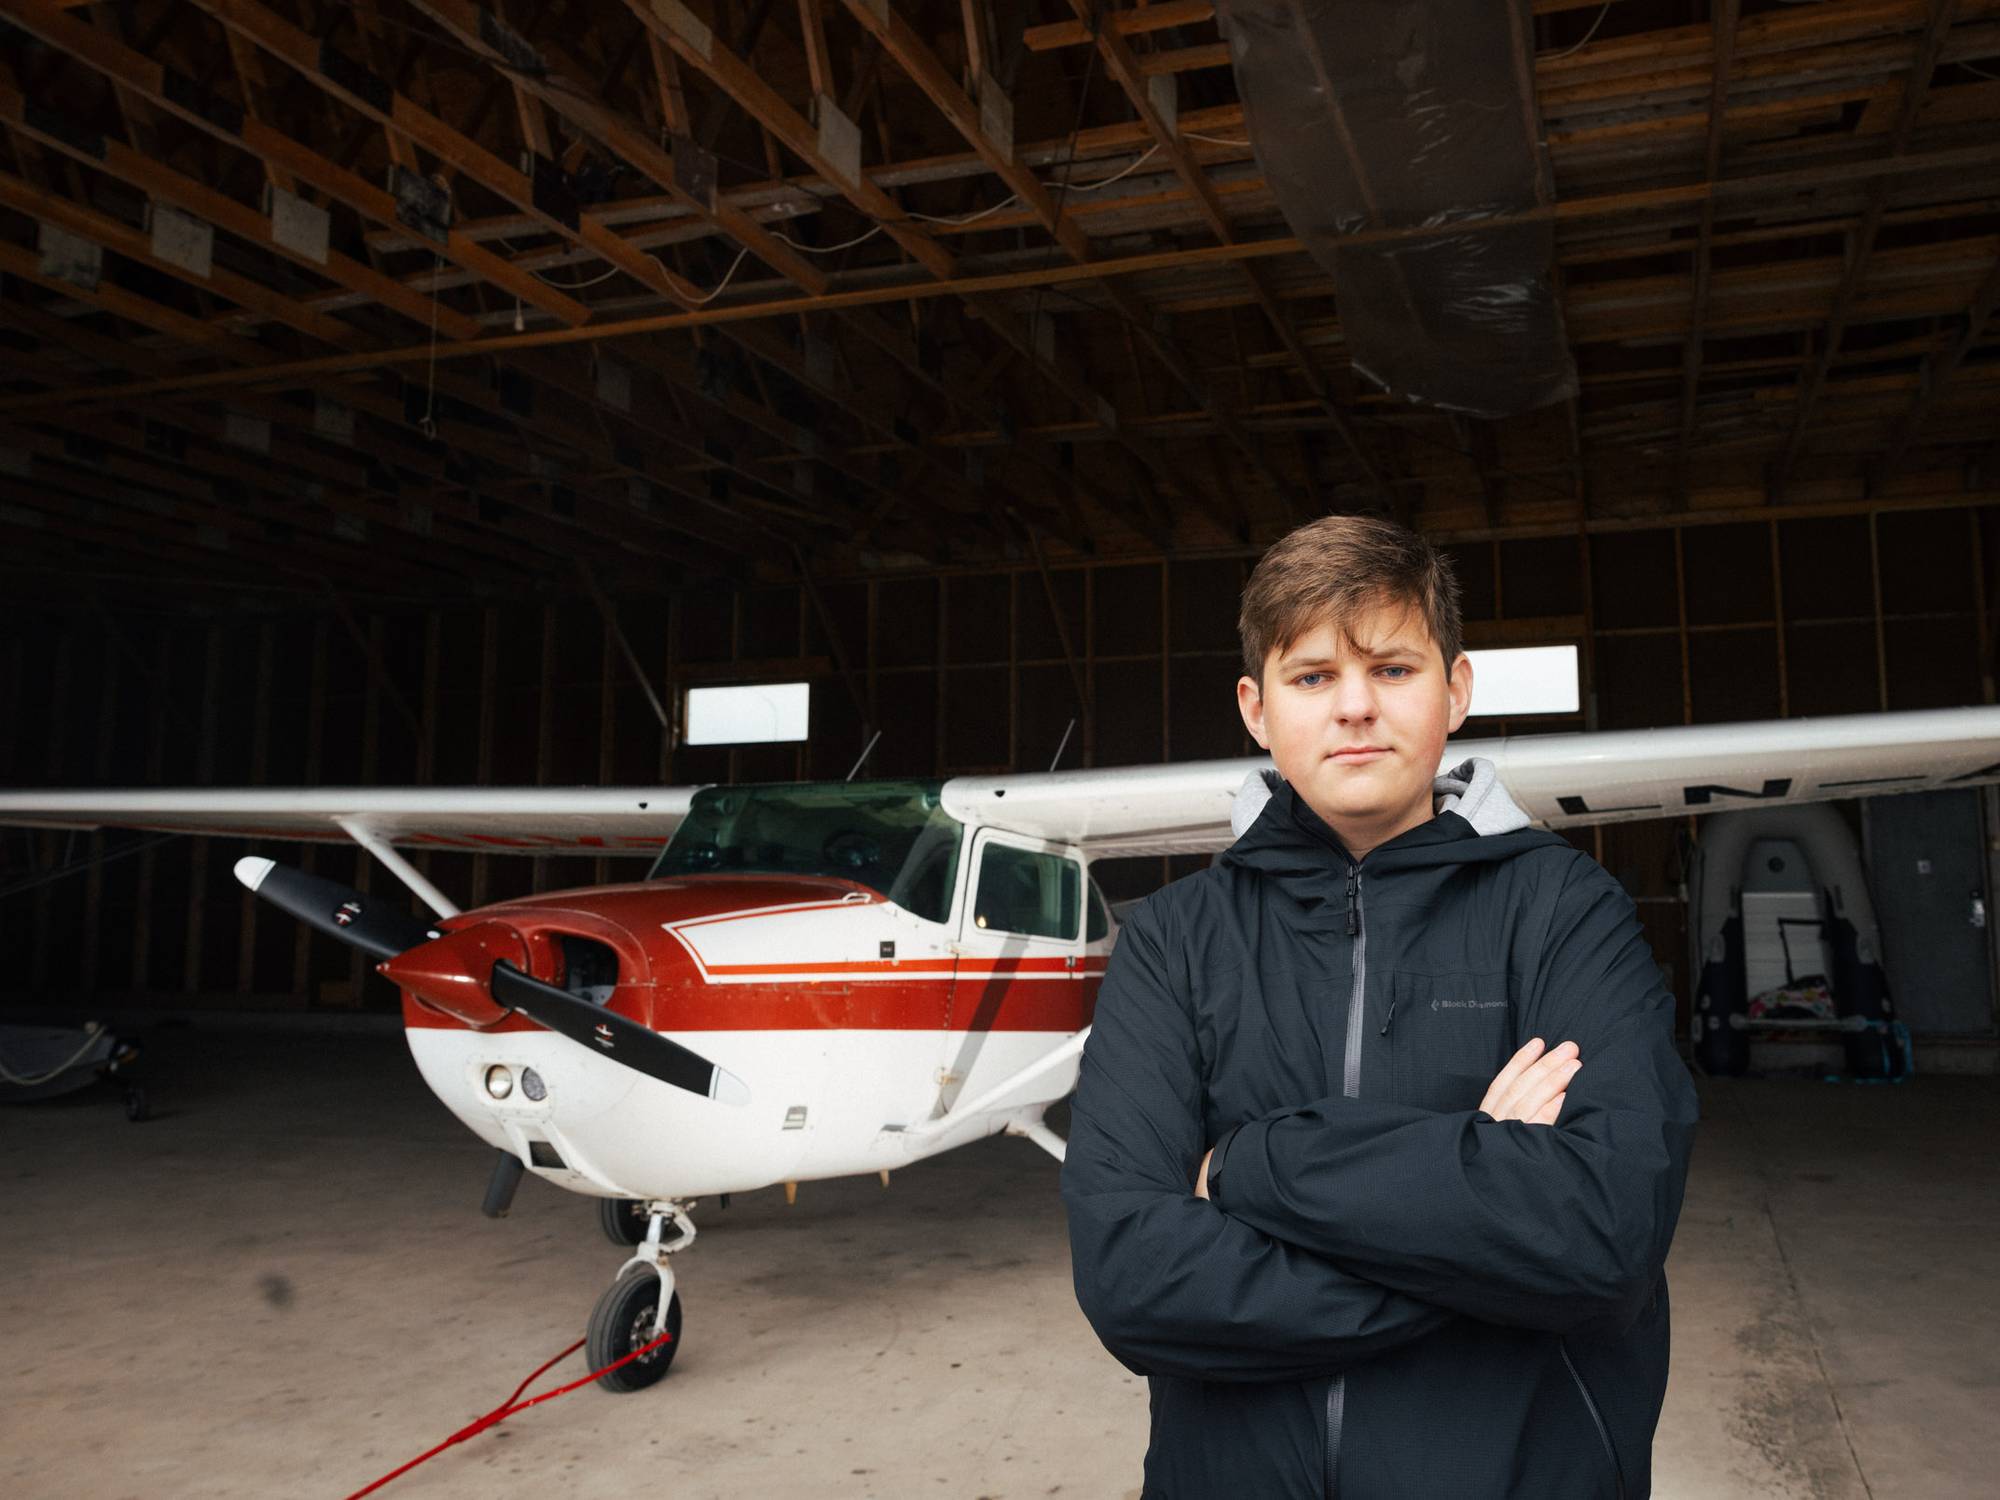 Kristoffer står foran et 37 år gammelt firemannsfly i en liten hangar. Flyet er hvitt og rødt. Han har armene i kryss og ser lurt inn i kamera.